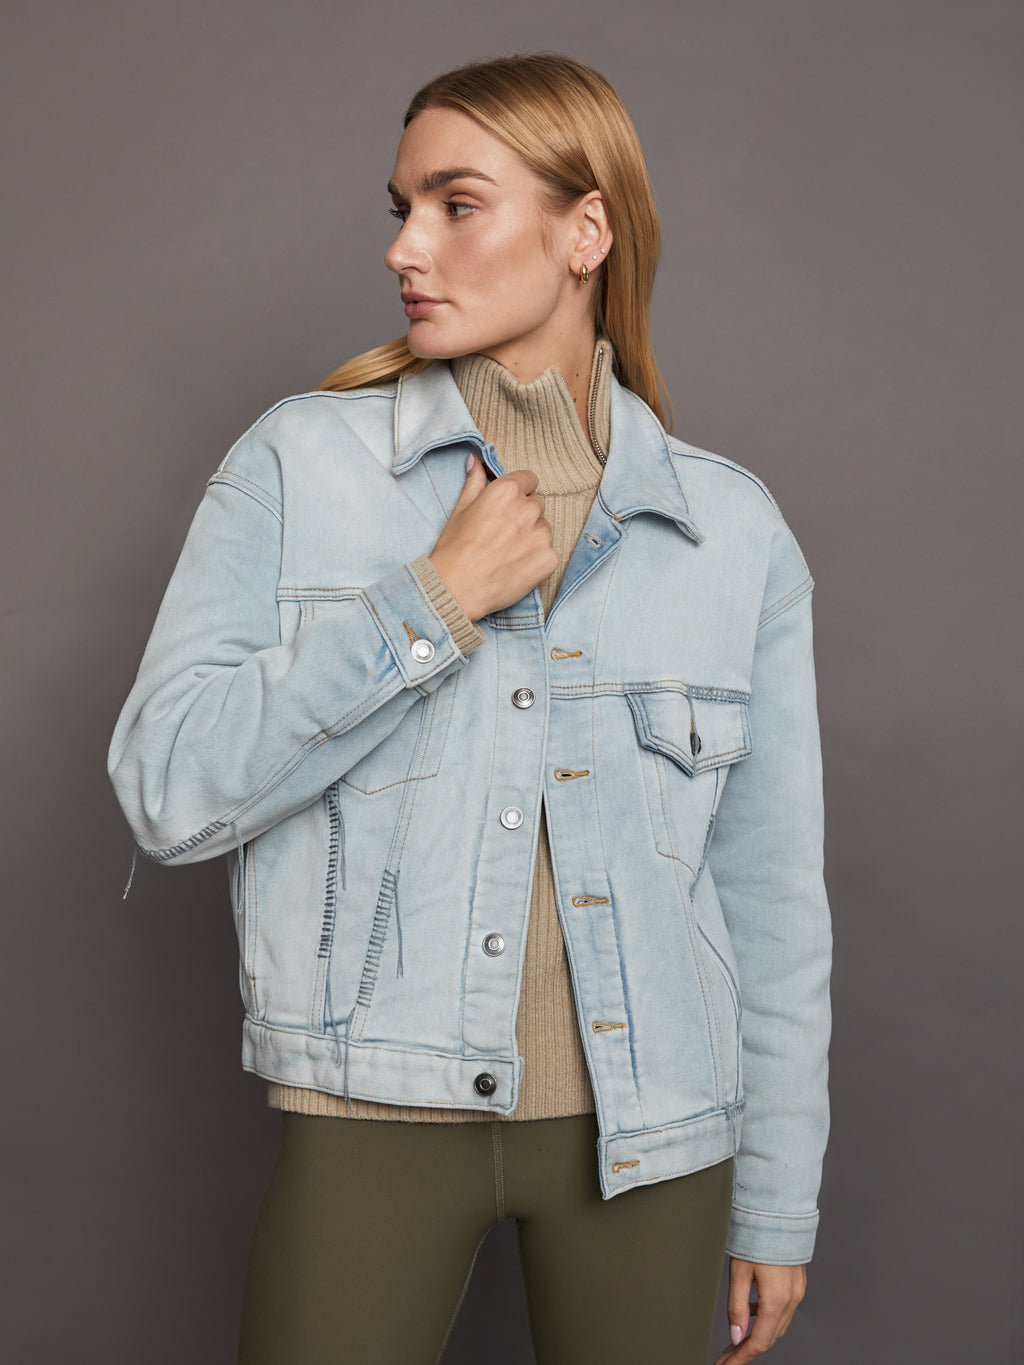 Ladies Women Fashion Denim Jacket Oversized Urban Streetwear Jeans Long  Sleeve | eBay